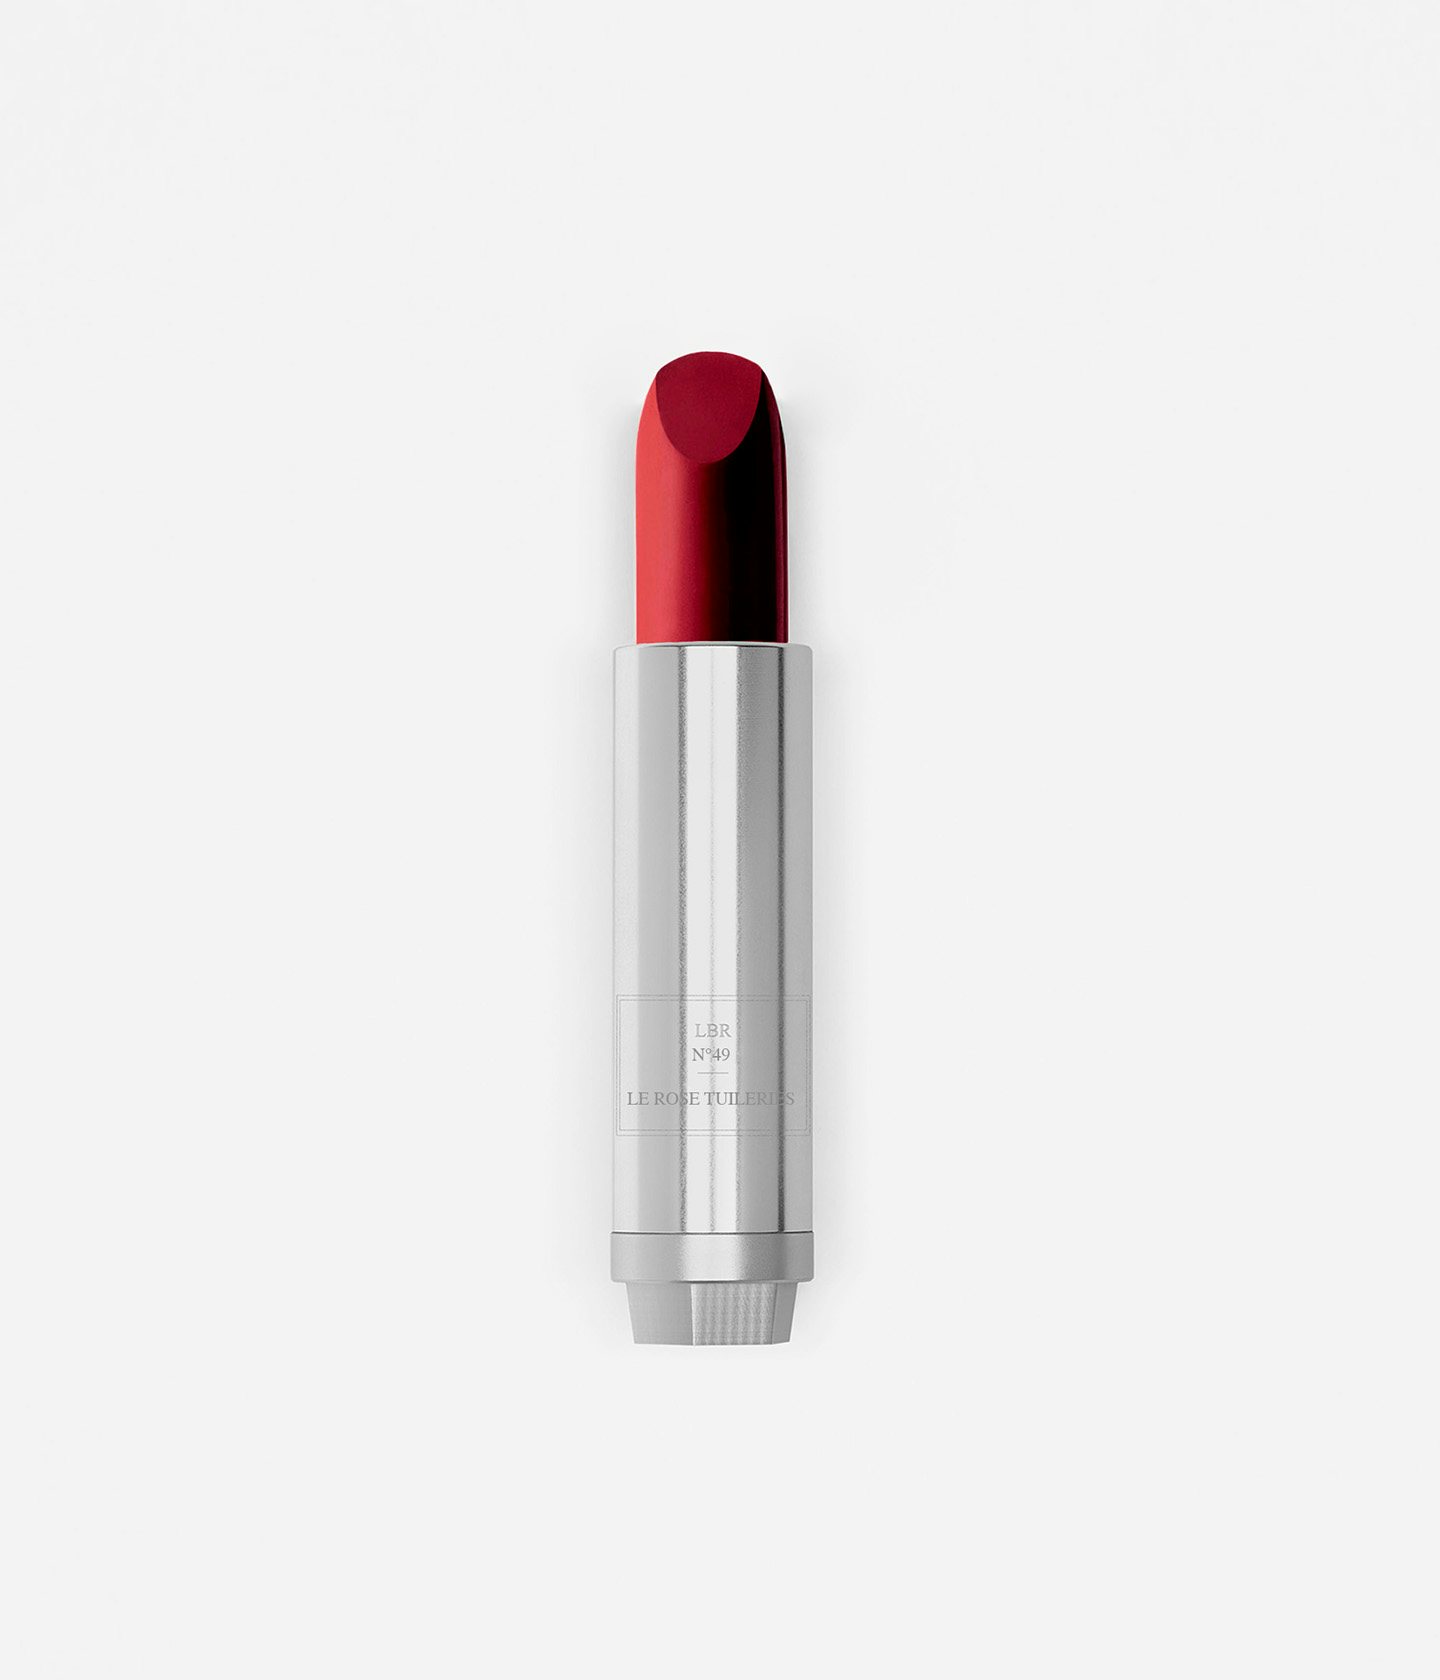 La bouche rouge nuance du rouge à lèvres Le Rose Tuileries dans sa recharge en metal